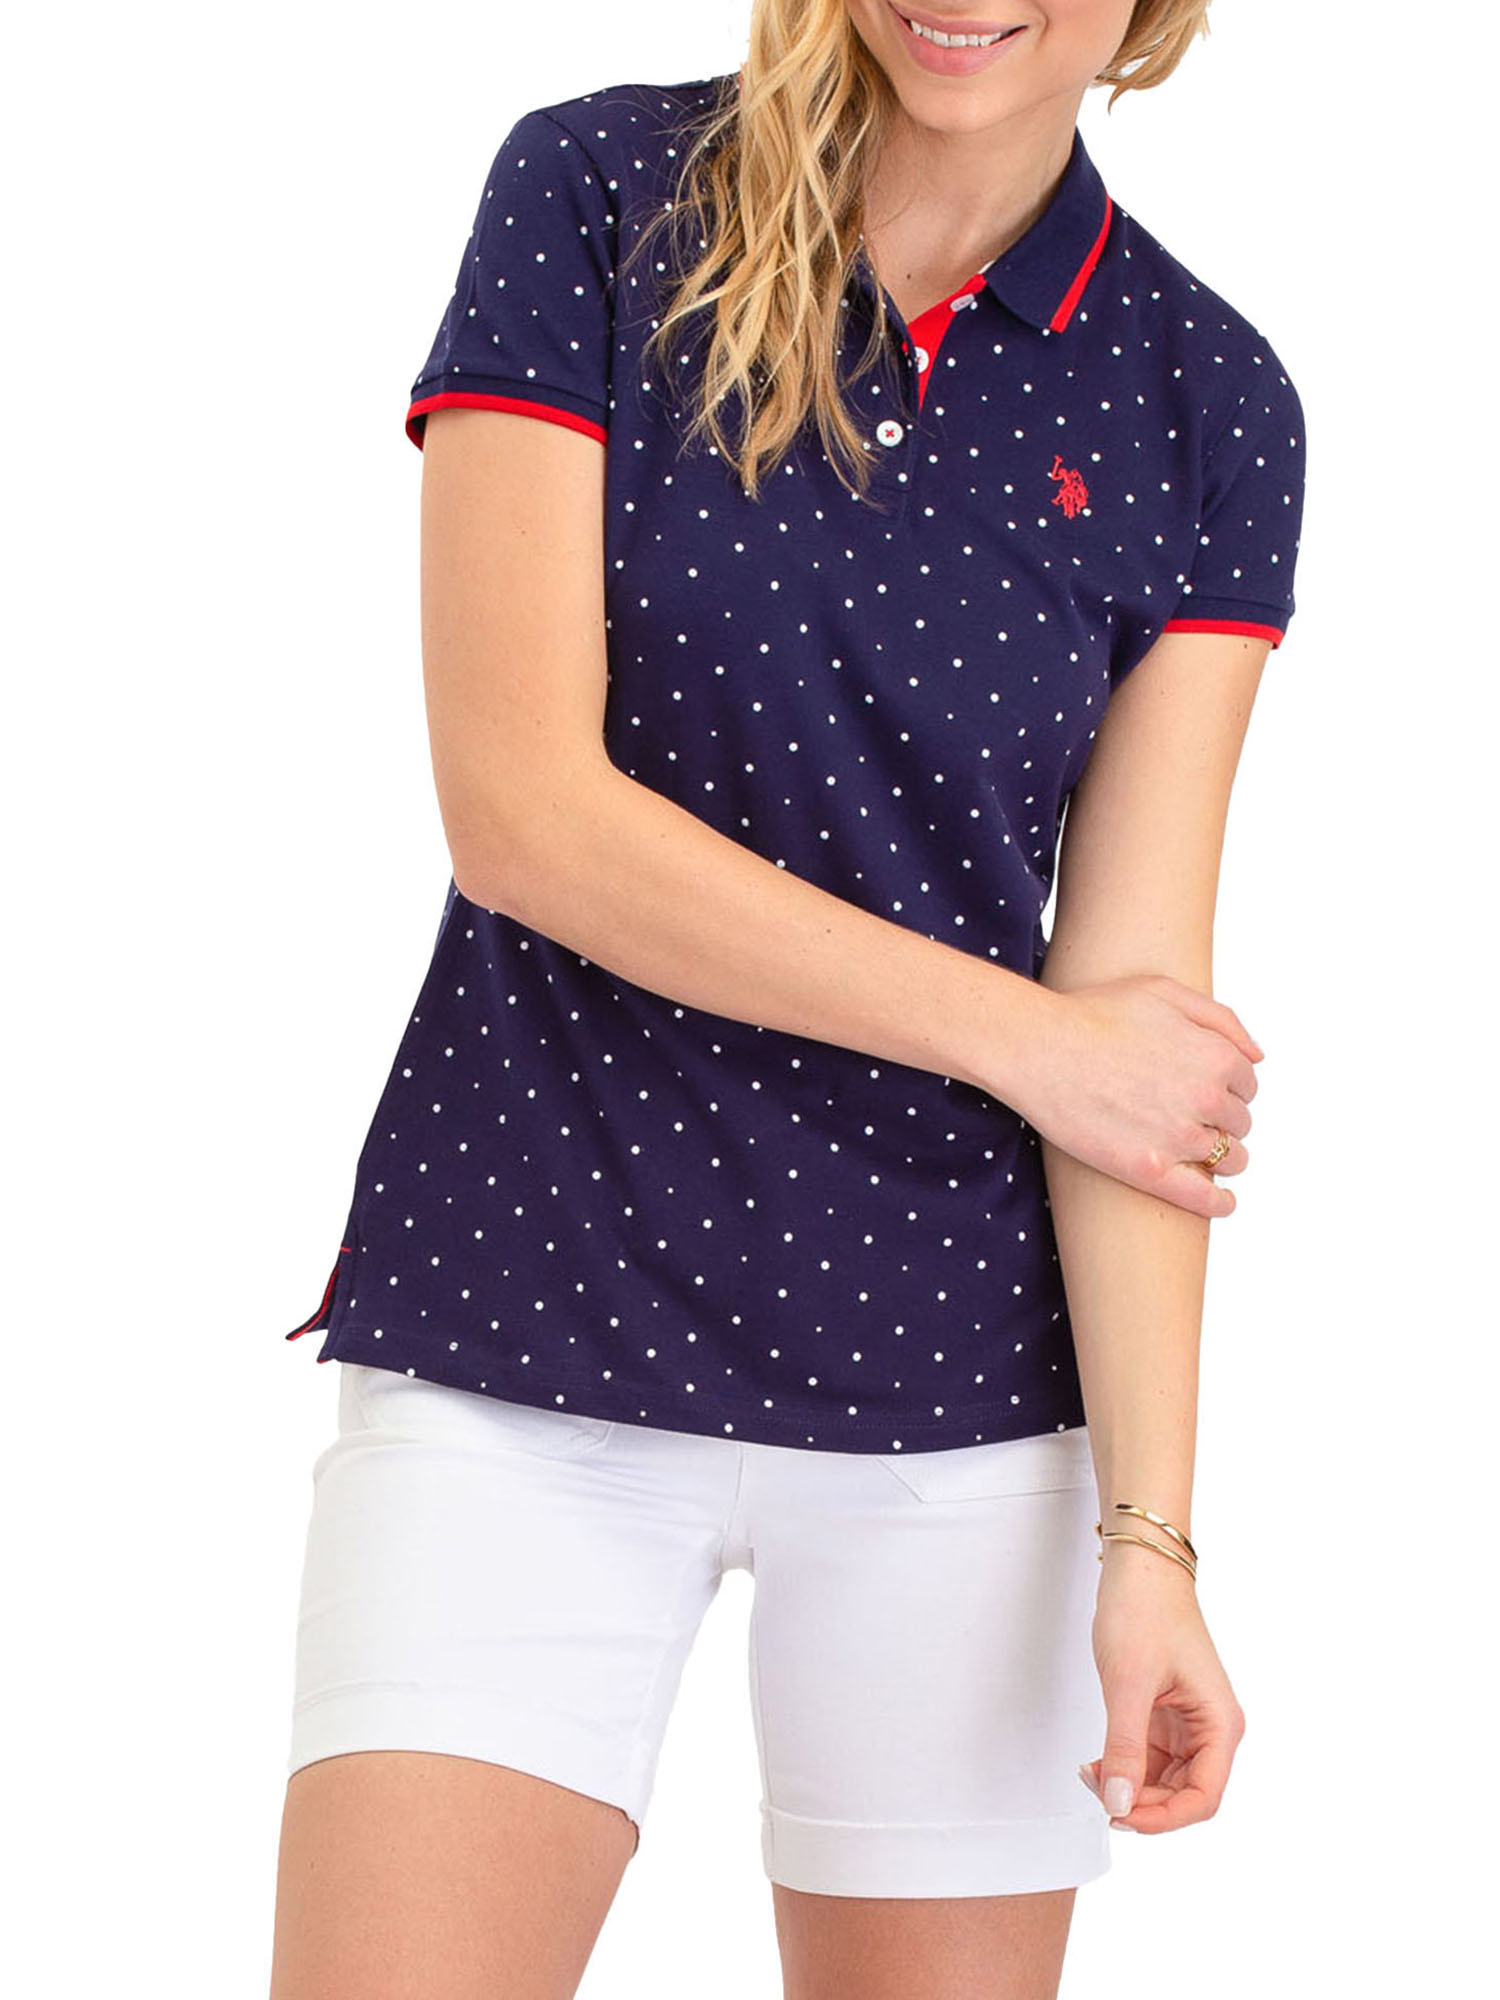 US Polo Assn. Classic Polo Dot Pique Short Sleeve Shirt, Women's - image 1 of 4